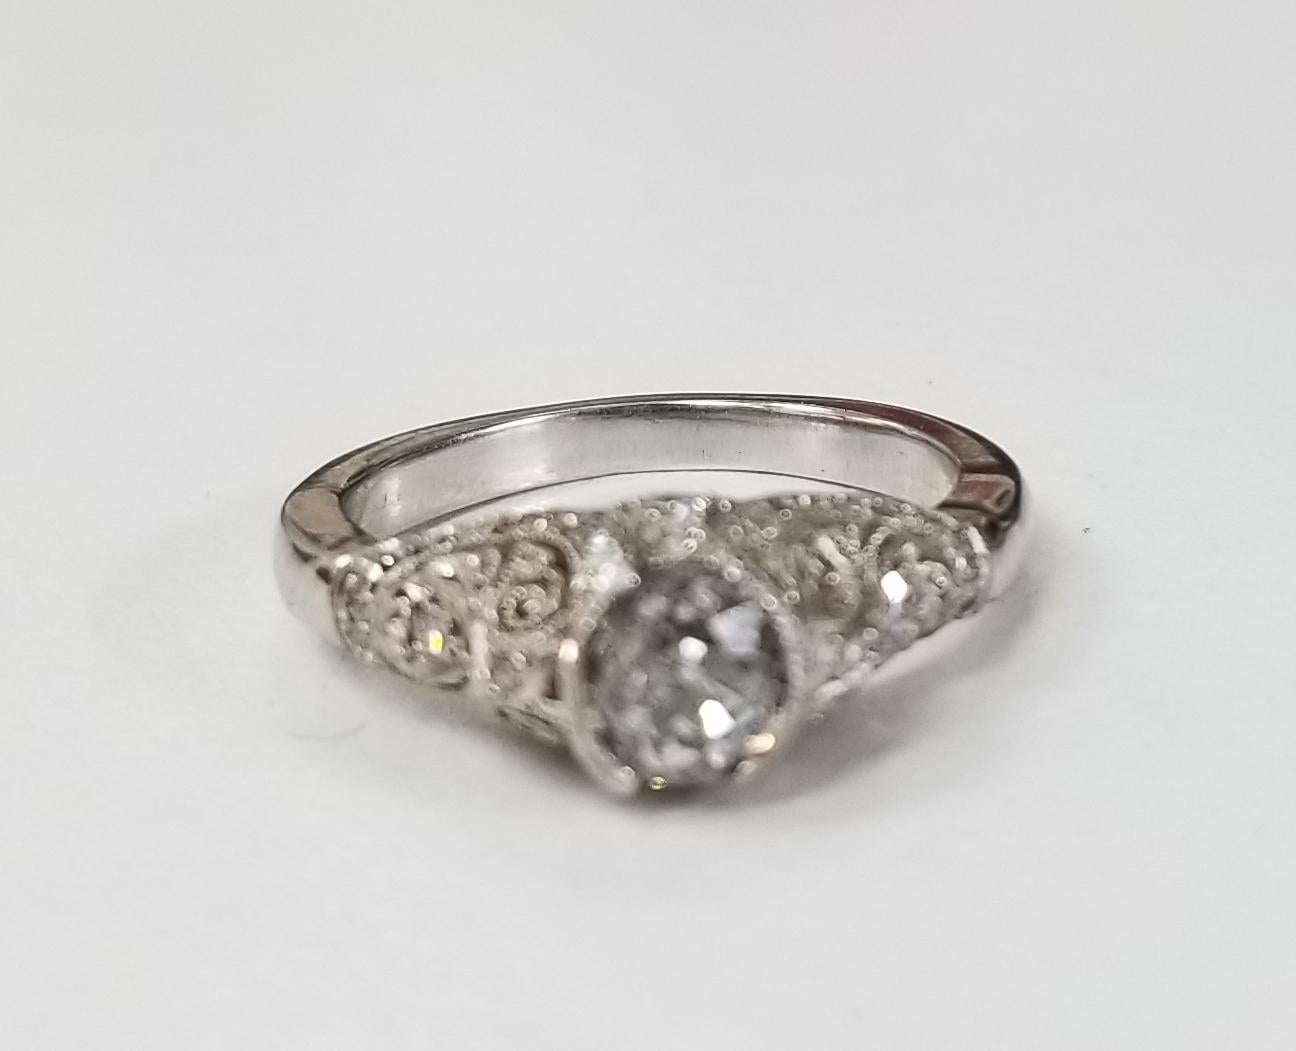 14 karat white gold diamond wedding vintage looking ring, containing 1 round old 